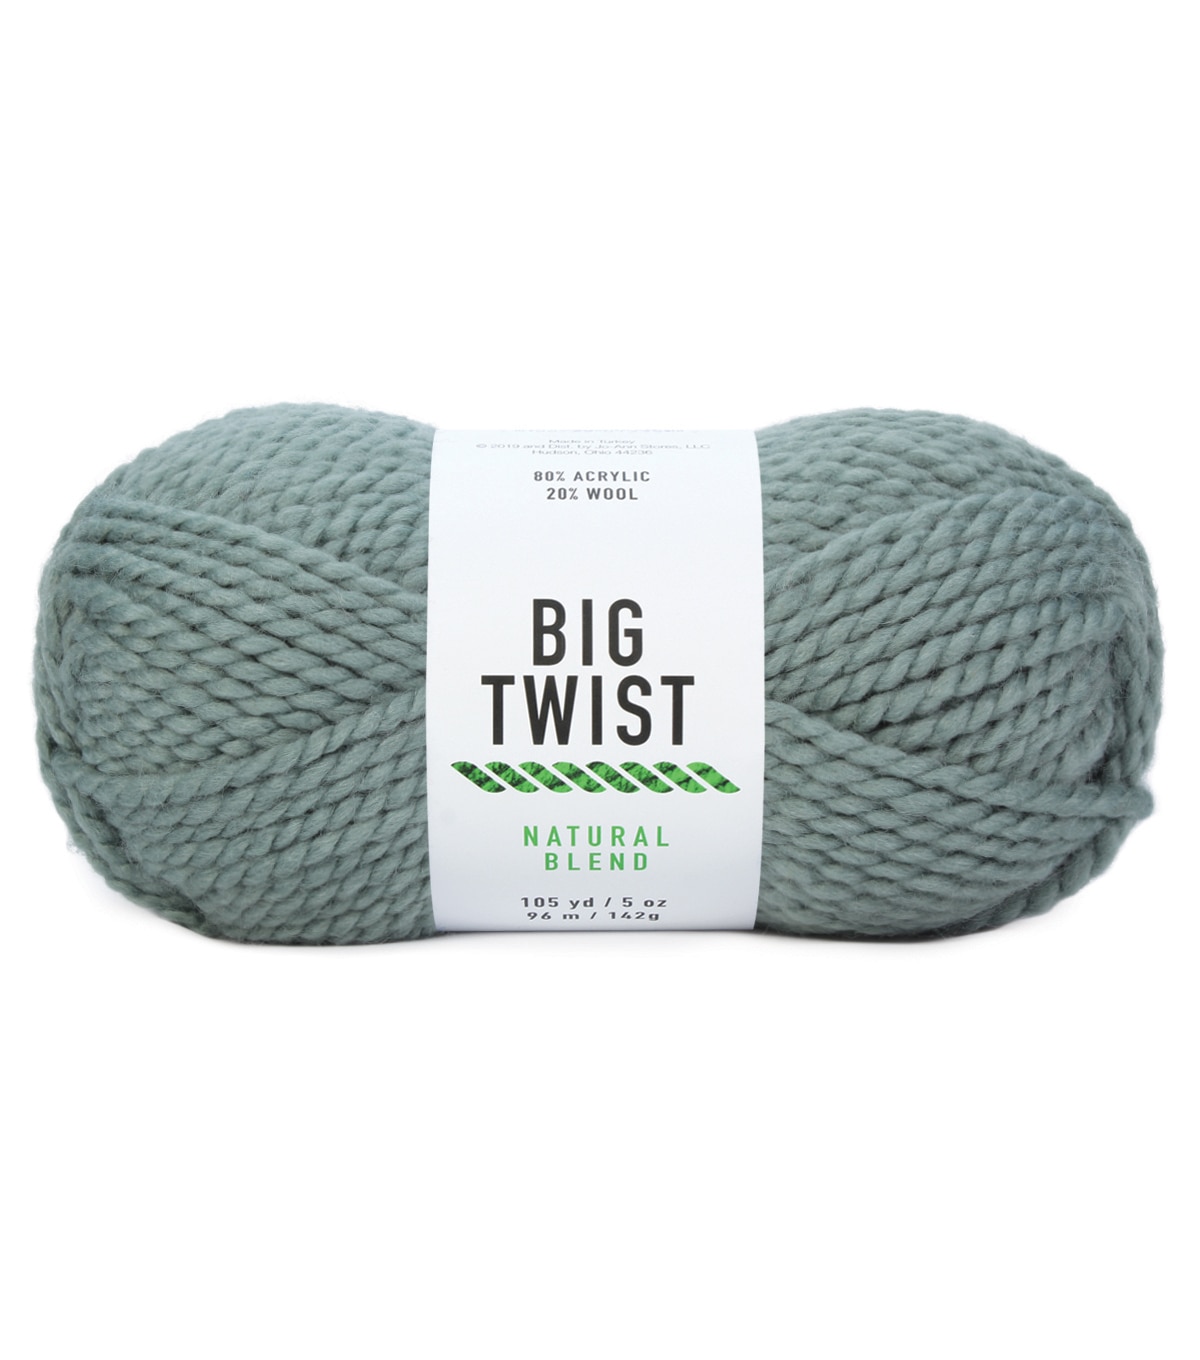 Natural Blend Yarn by Big Twist Yarns | JOANN